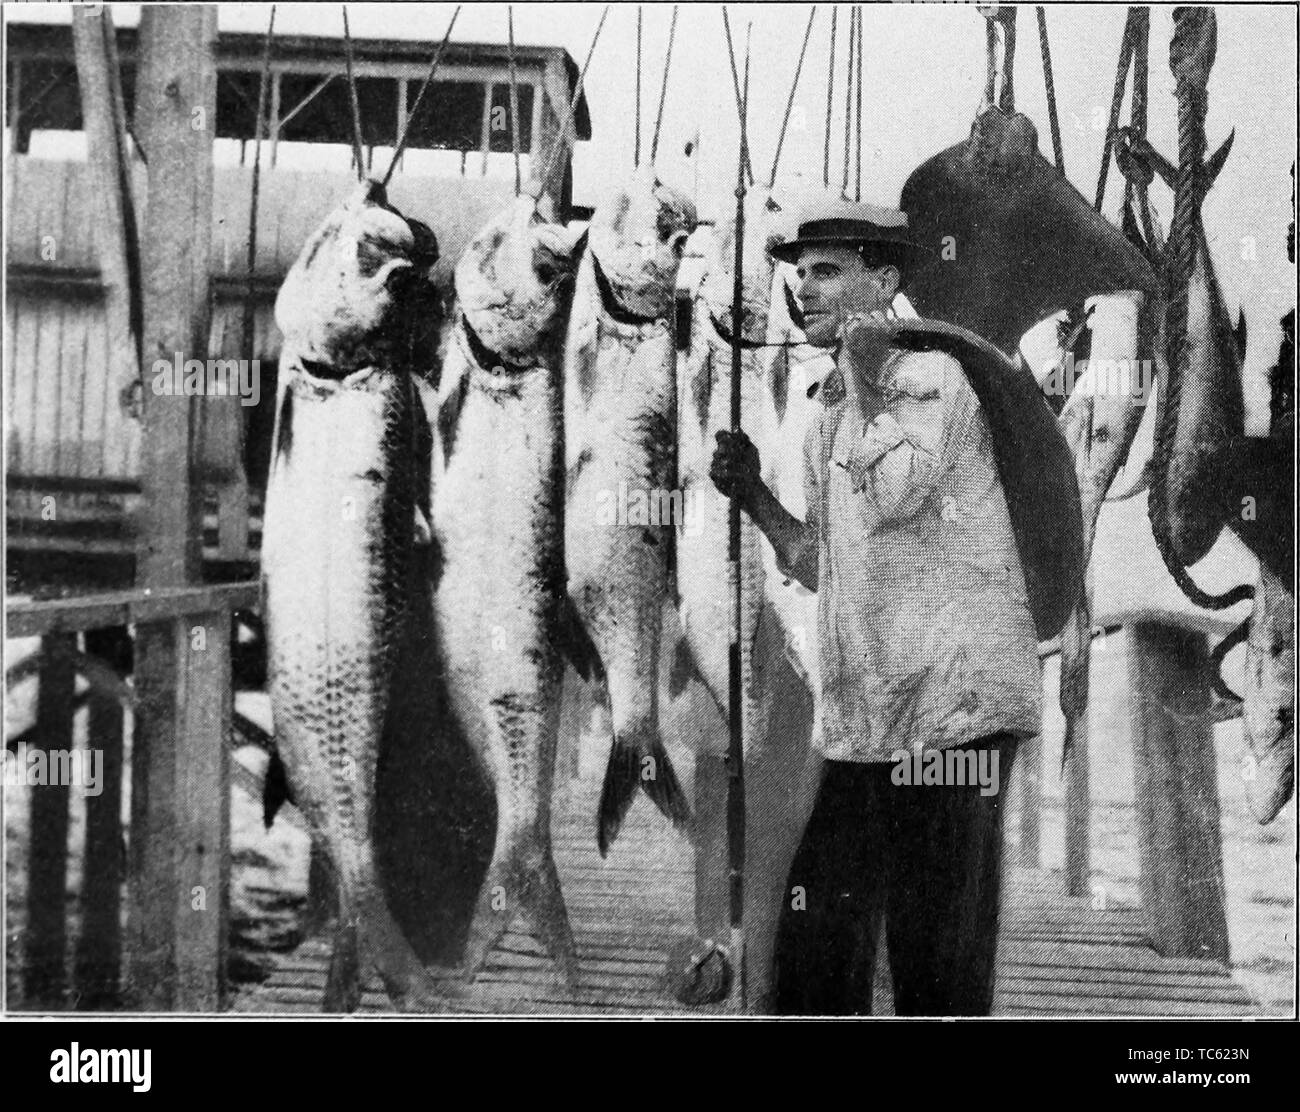 Photographie d'un pêcheur avec sa prise du jour des tarpons, Silver King du livre 'Book of Texas' par Harry Yandell Benoît et John A. Lomax, 1916. Avec la permission de Internet Archive. () Banque D'Images